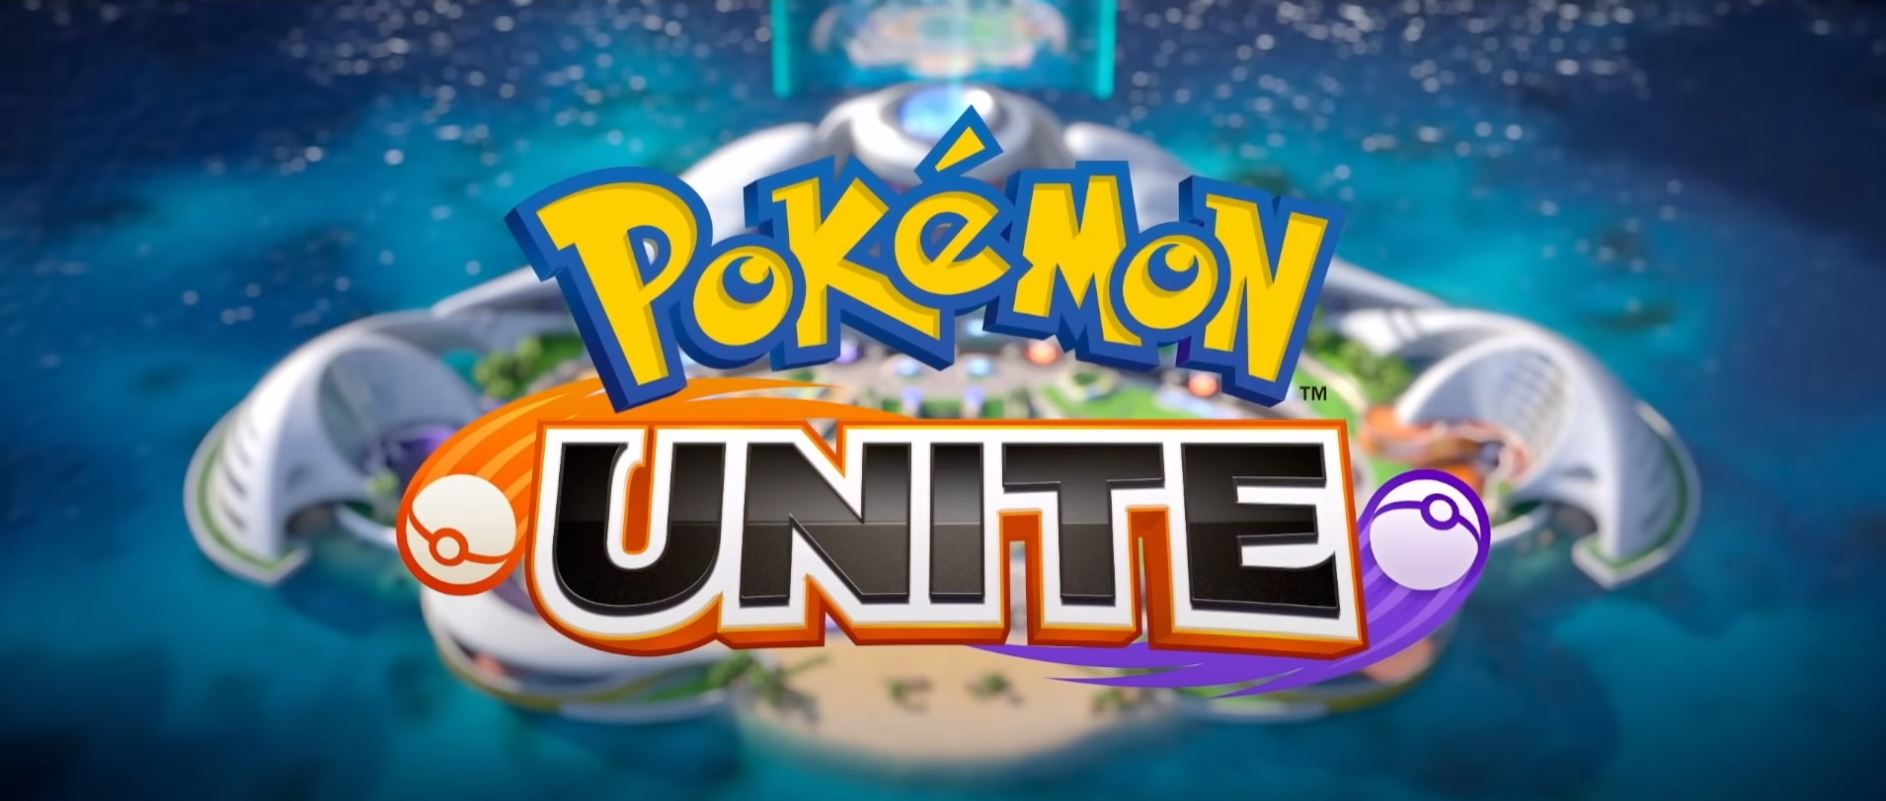 Pokemon Unite Logo-Trailer 2021